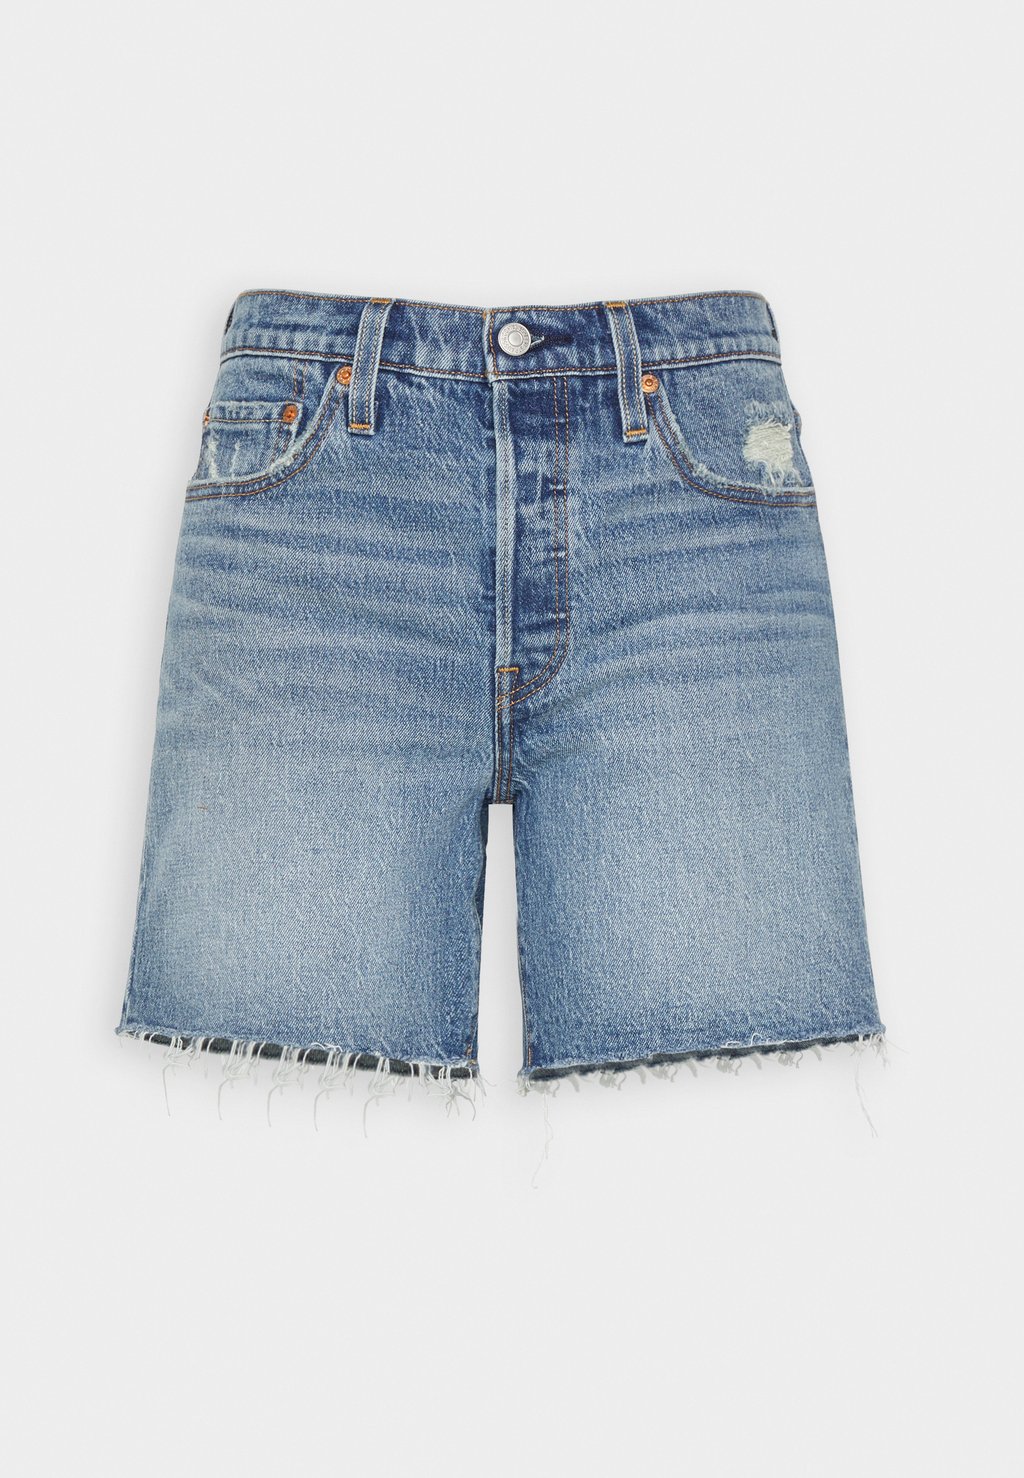 Джинсовые шорты Levi's 501 Mid Thigh Shorts, odeon цена и фото